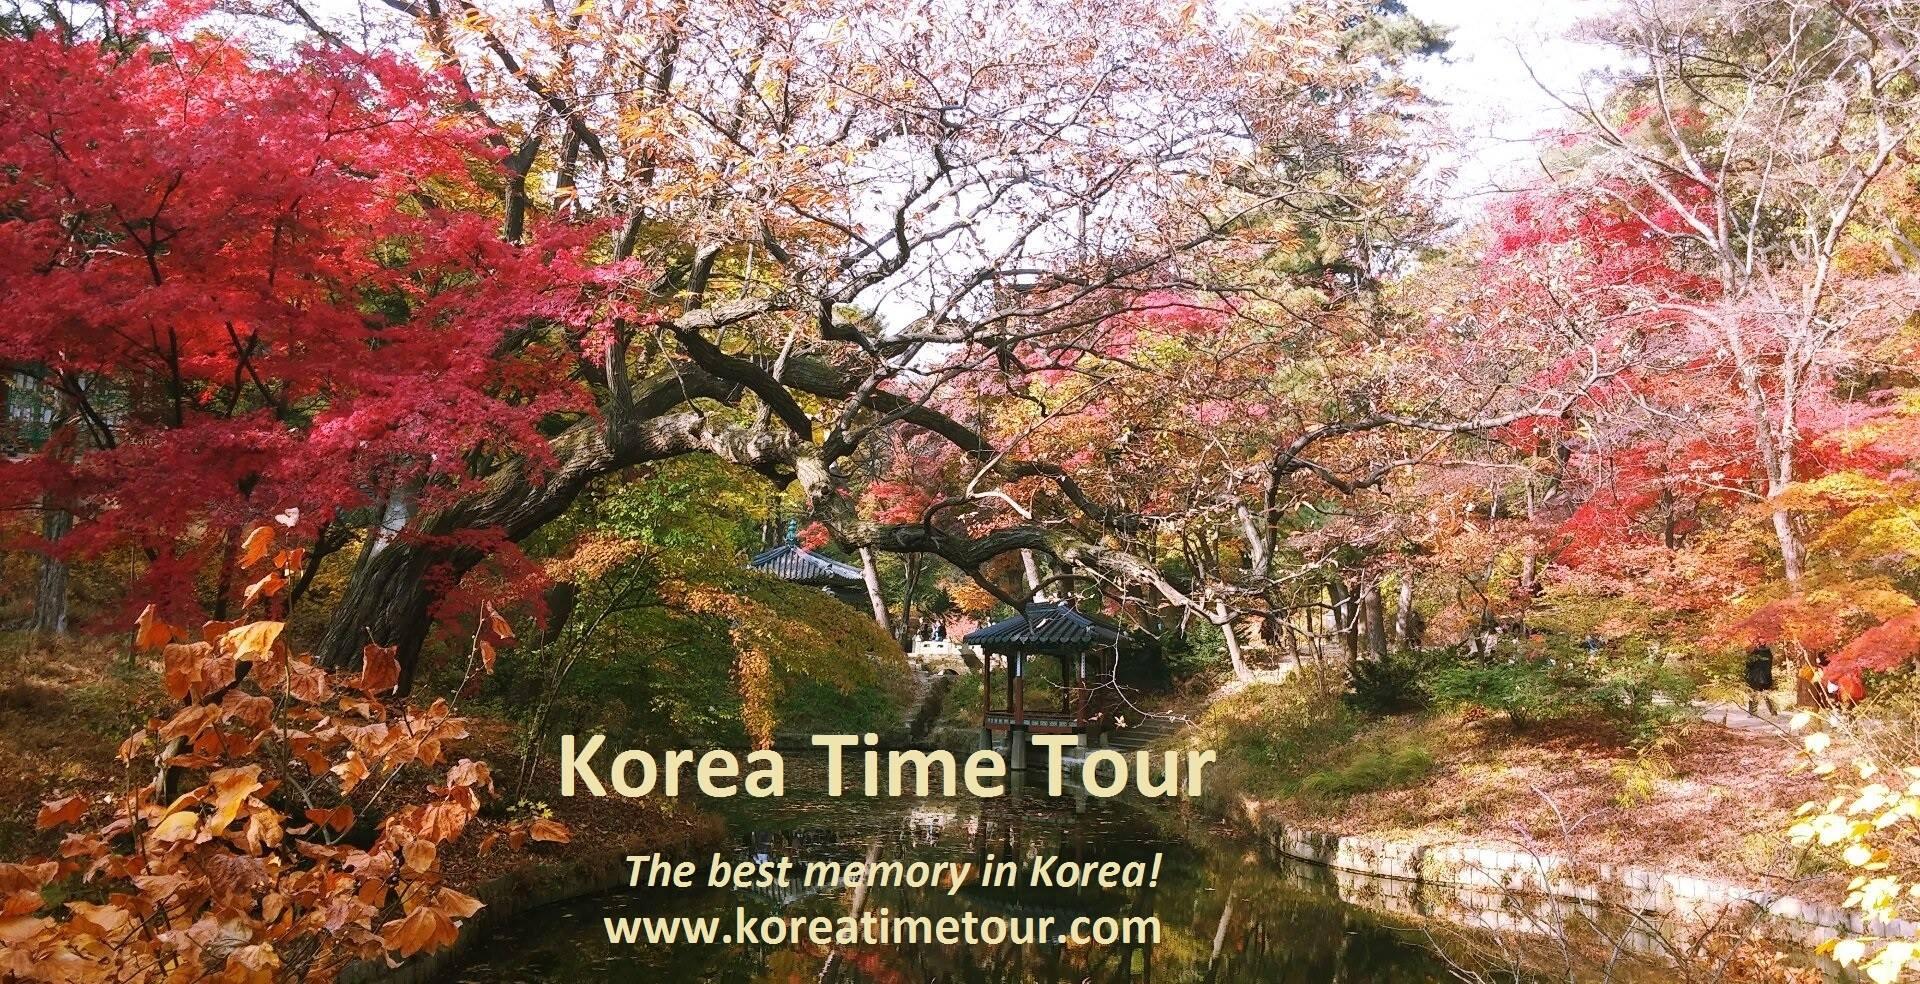 tour operator for south korea